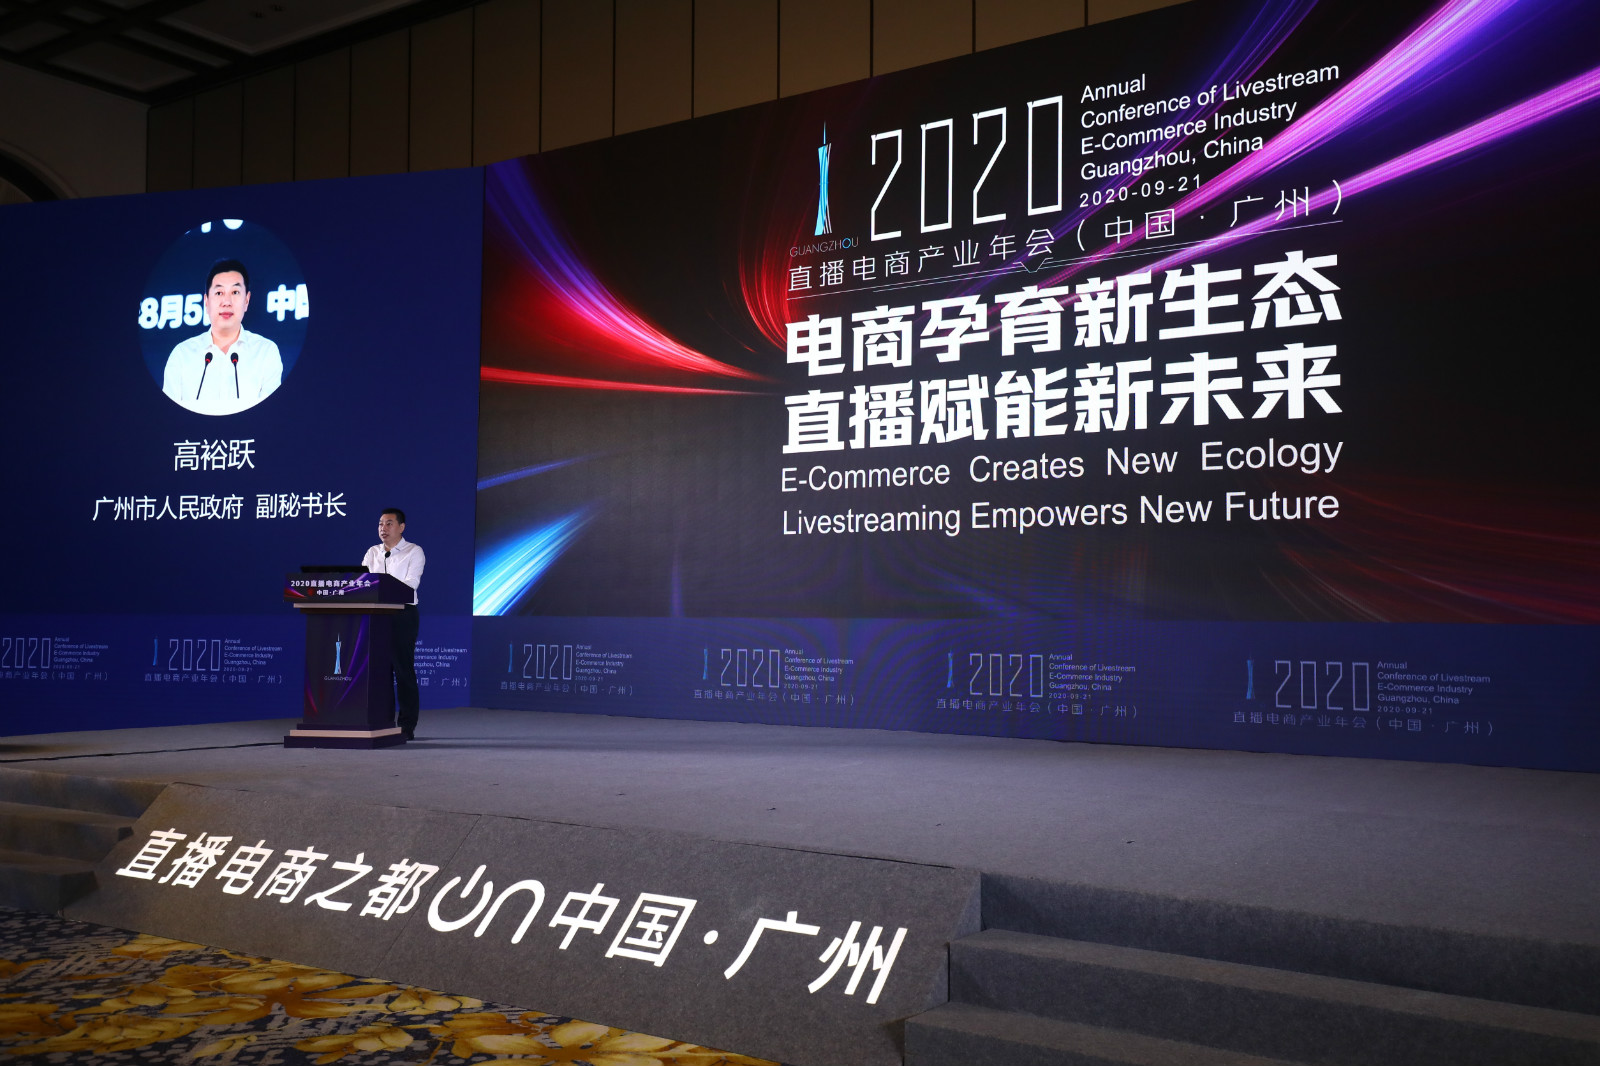 首个全国直播电商标准在广州发布 2020直播电商产业年会彰显广州数字力量